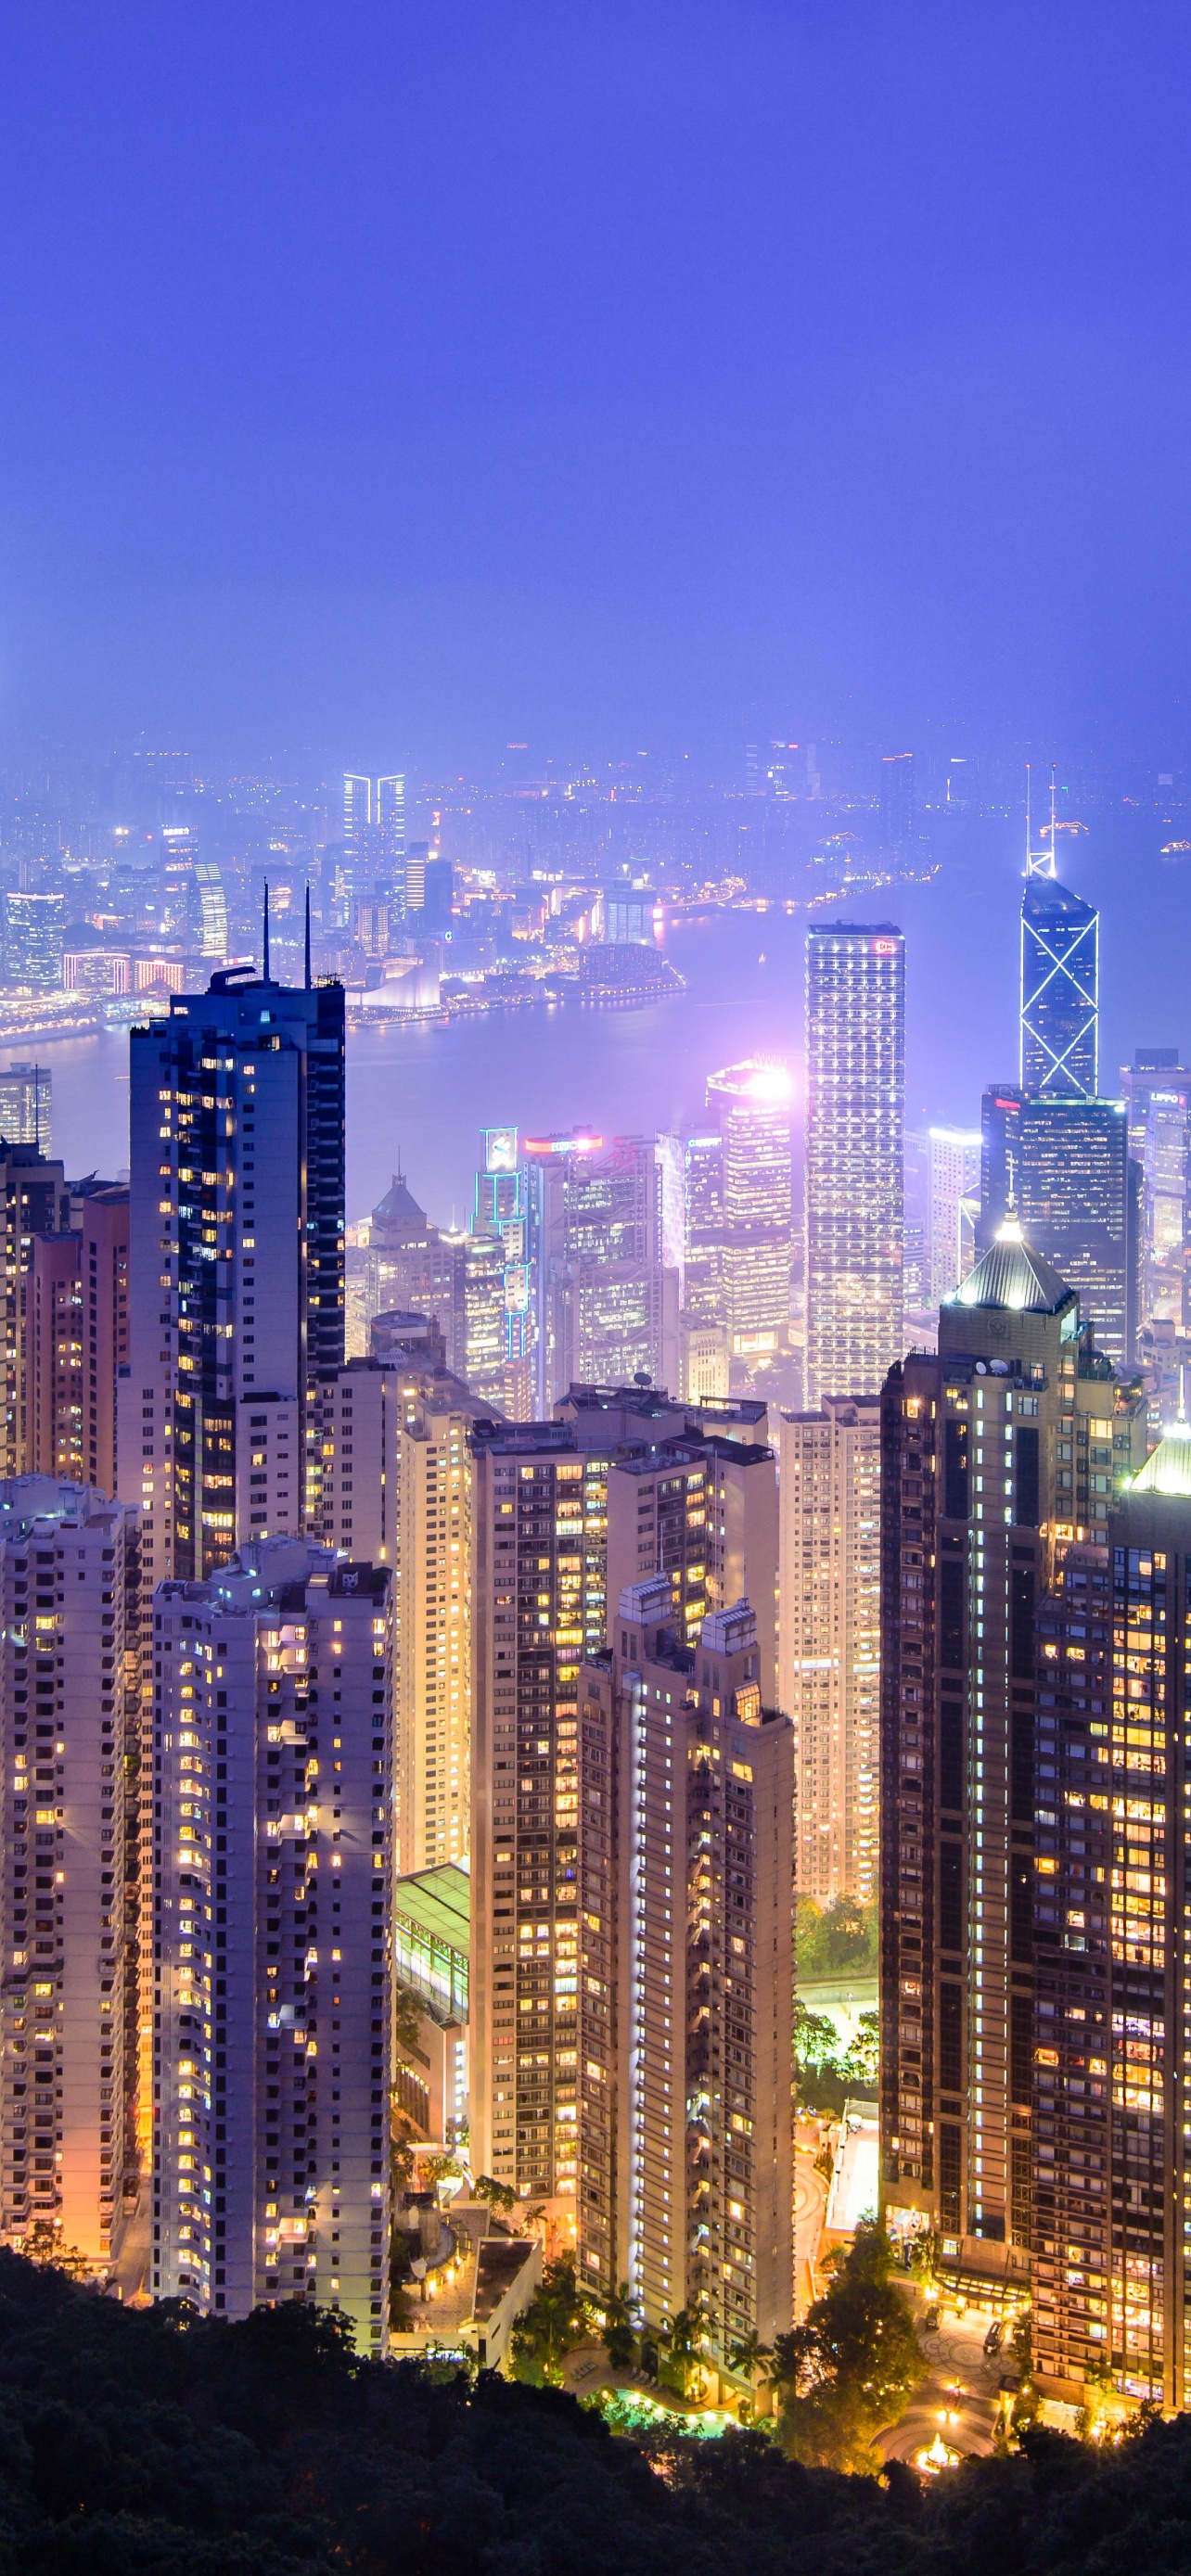 Chào mừng bạn đến với Victoria Peak - một trong những điểm du lịch nổi tiếng của Hong Kong. Bạn muốn mang vẻ đẹp của thành phố đến với màn hình của mình? Khám phá ngay bộ sưu tập hình nền Hong Kong chất lượng cao với định dạng Victoria Peak được trang trí tuyệt đẹp, sẽ đưa bạn đến với một cuộc phiêu lưu đầy màu sắc.